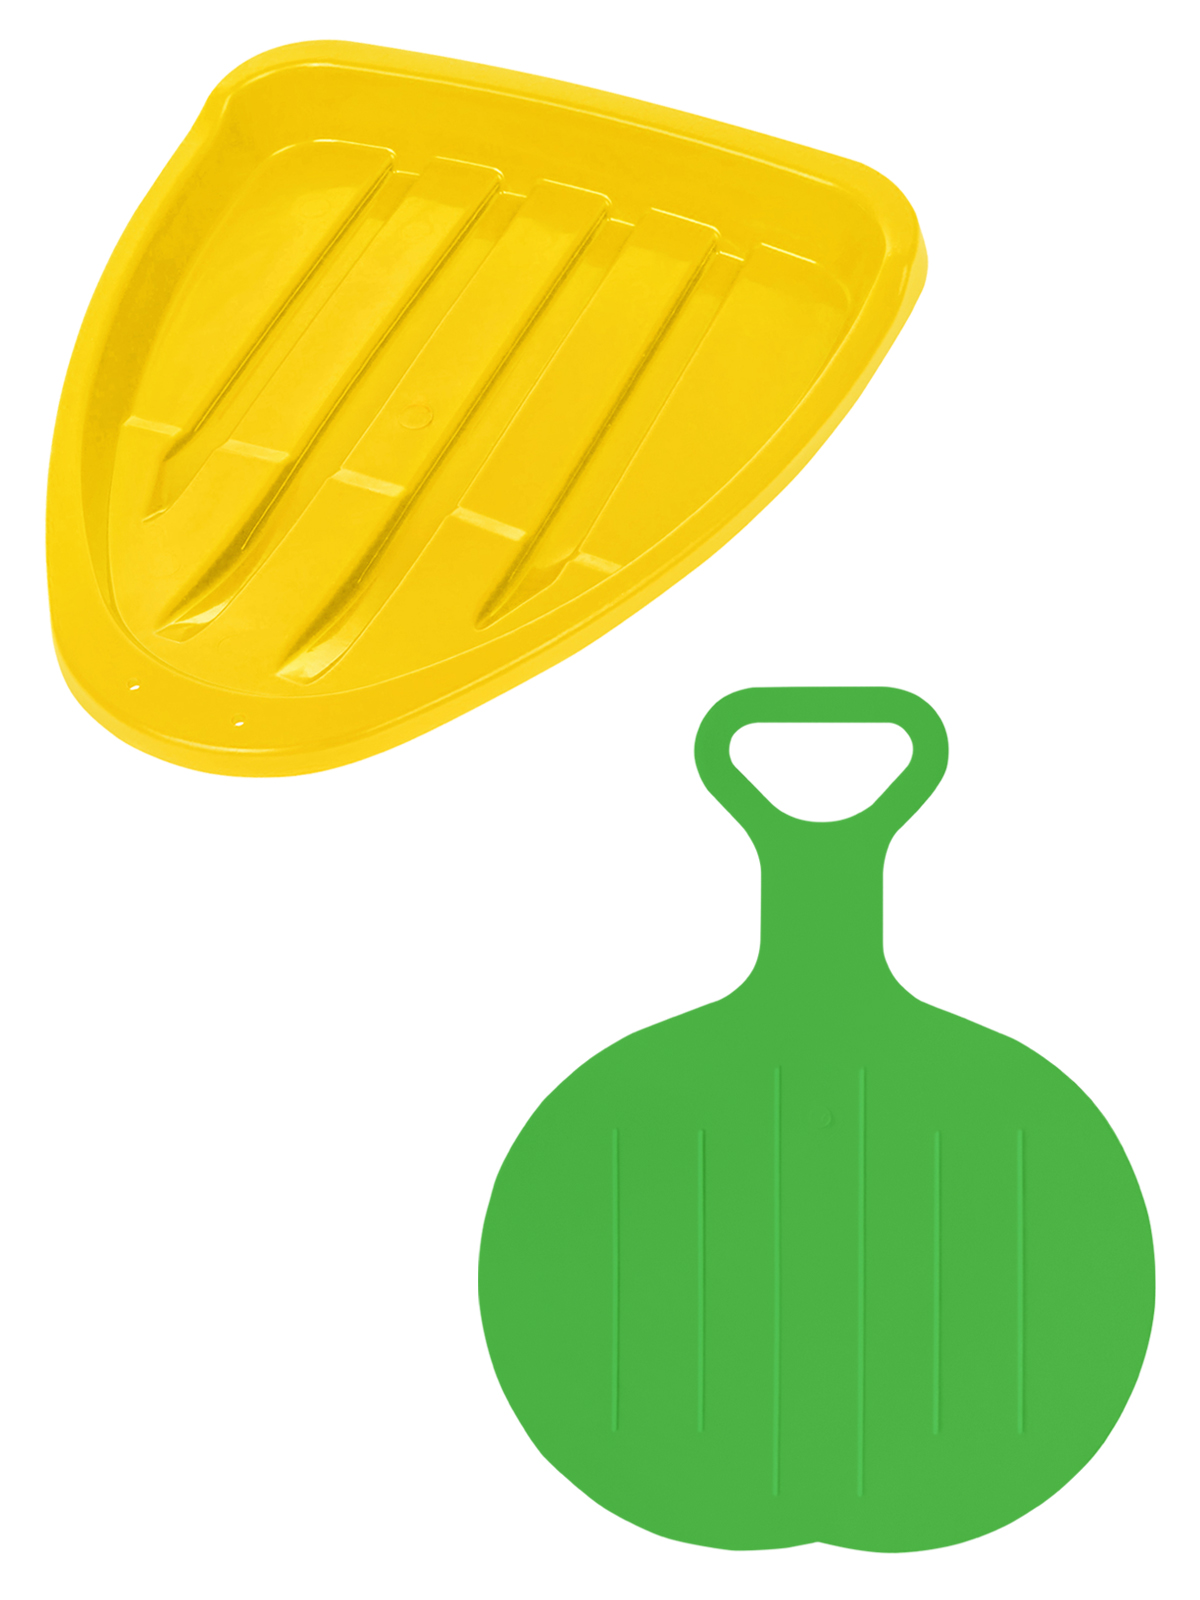 Игровой зимний набор Винтер Ледянка Треугольник желтая + Ледянка круглая зеленая